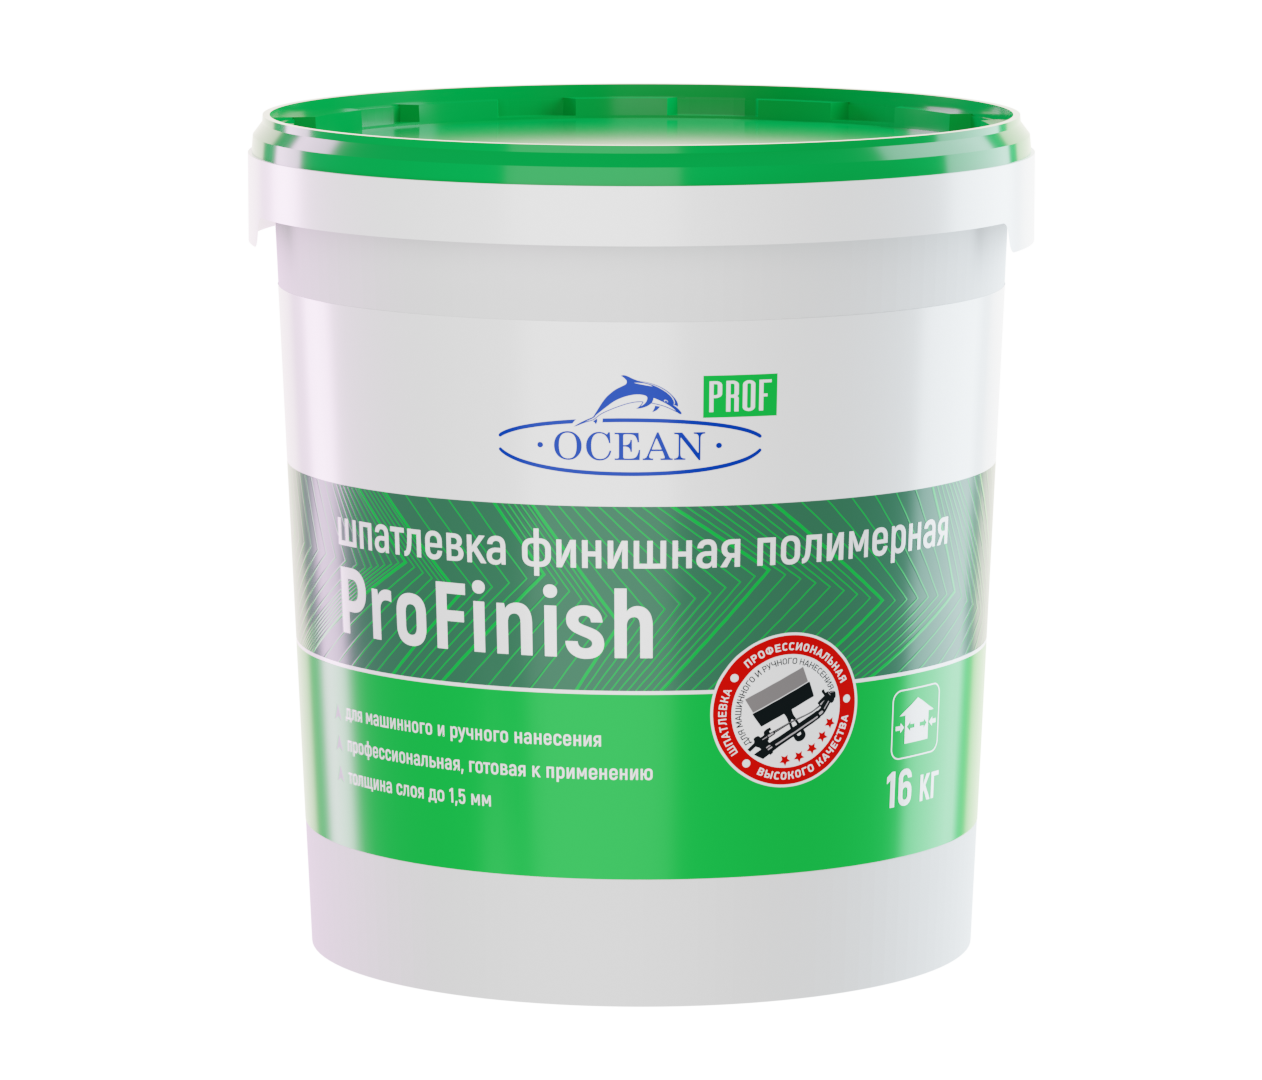 Шпатлевка финишная полимерная "ProFinish" 5 кг, 20 кг 1